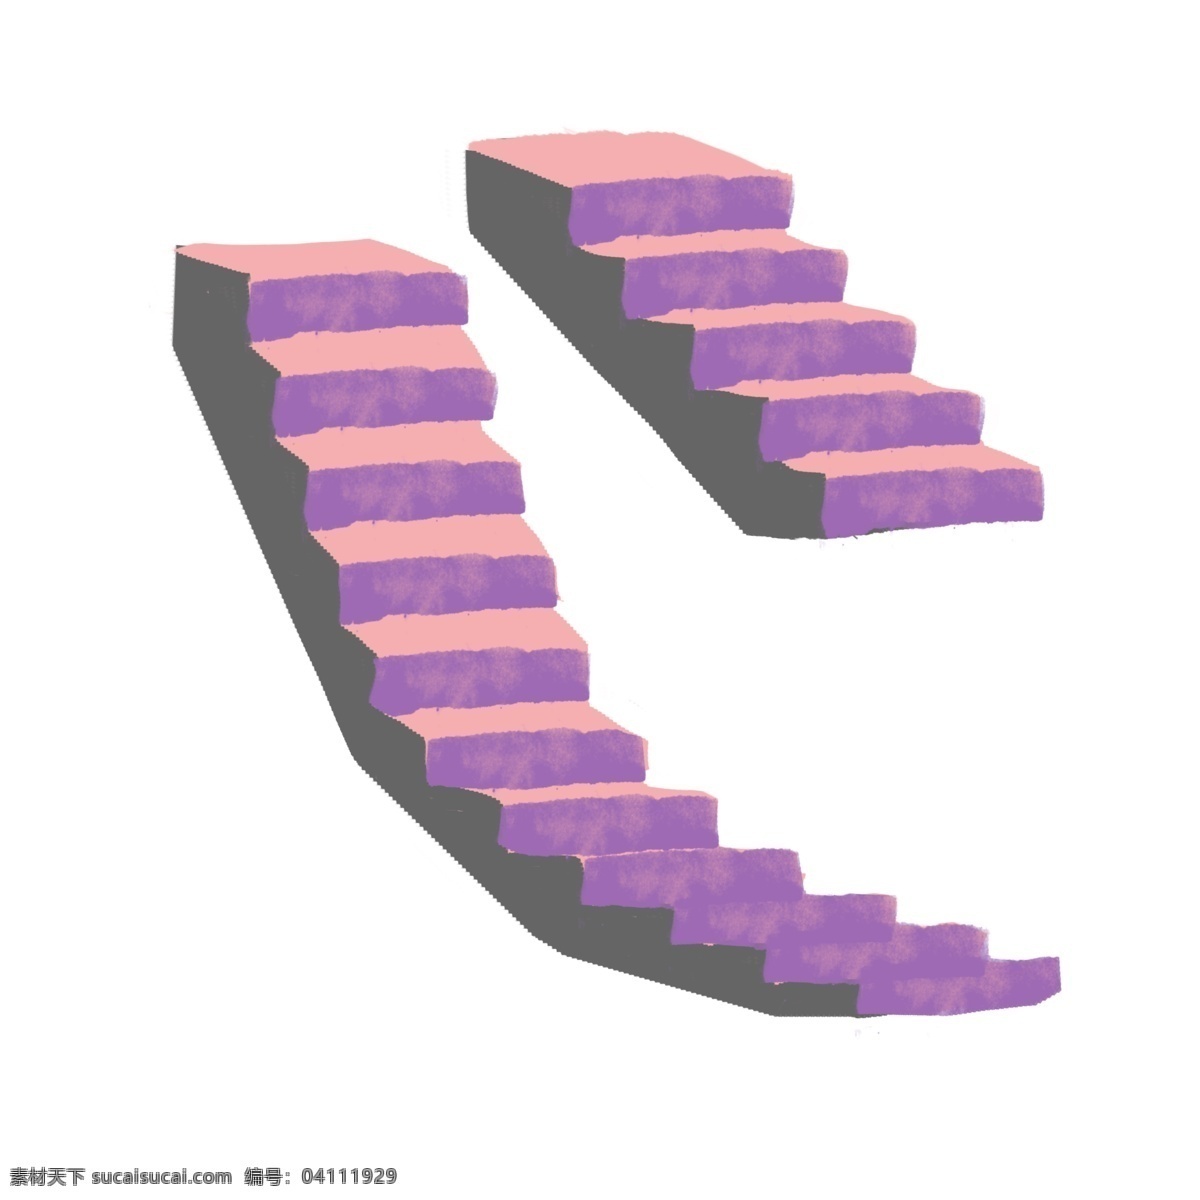 紫色 楼梯 装饰 插画 紫色的楼梯 漂亮的楼梯 创意楼梯 室外楼梯 楼梯装饰 楼梯插画 精美楼梯